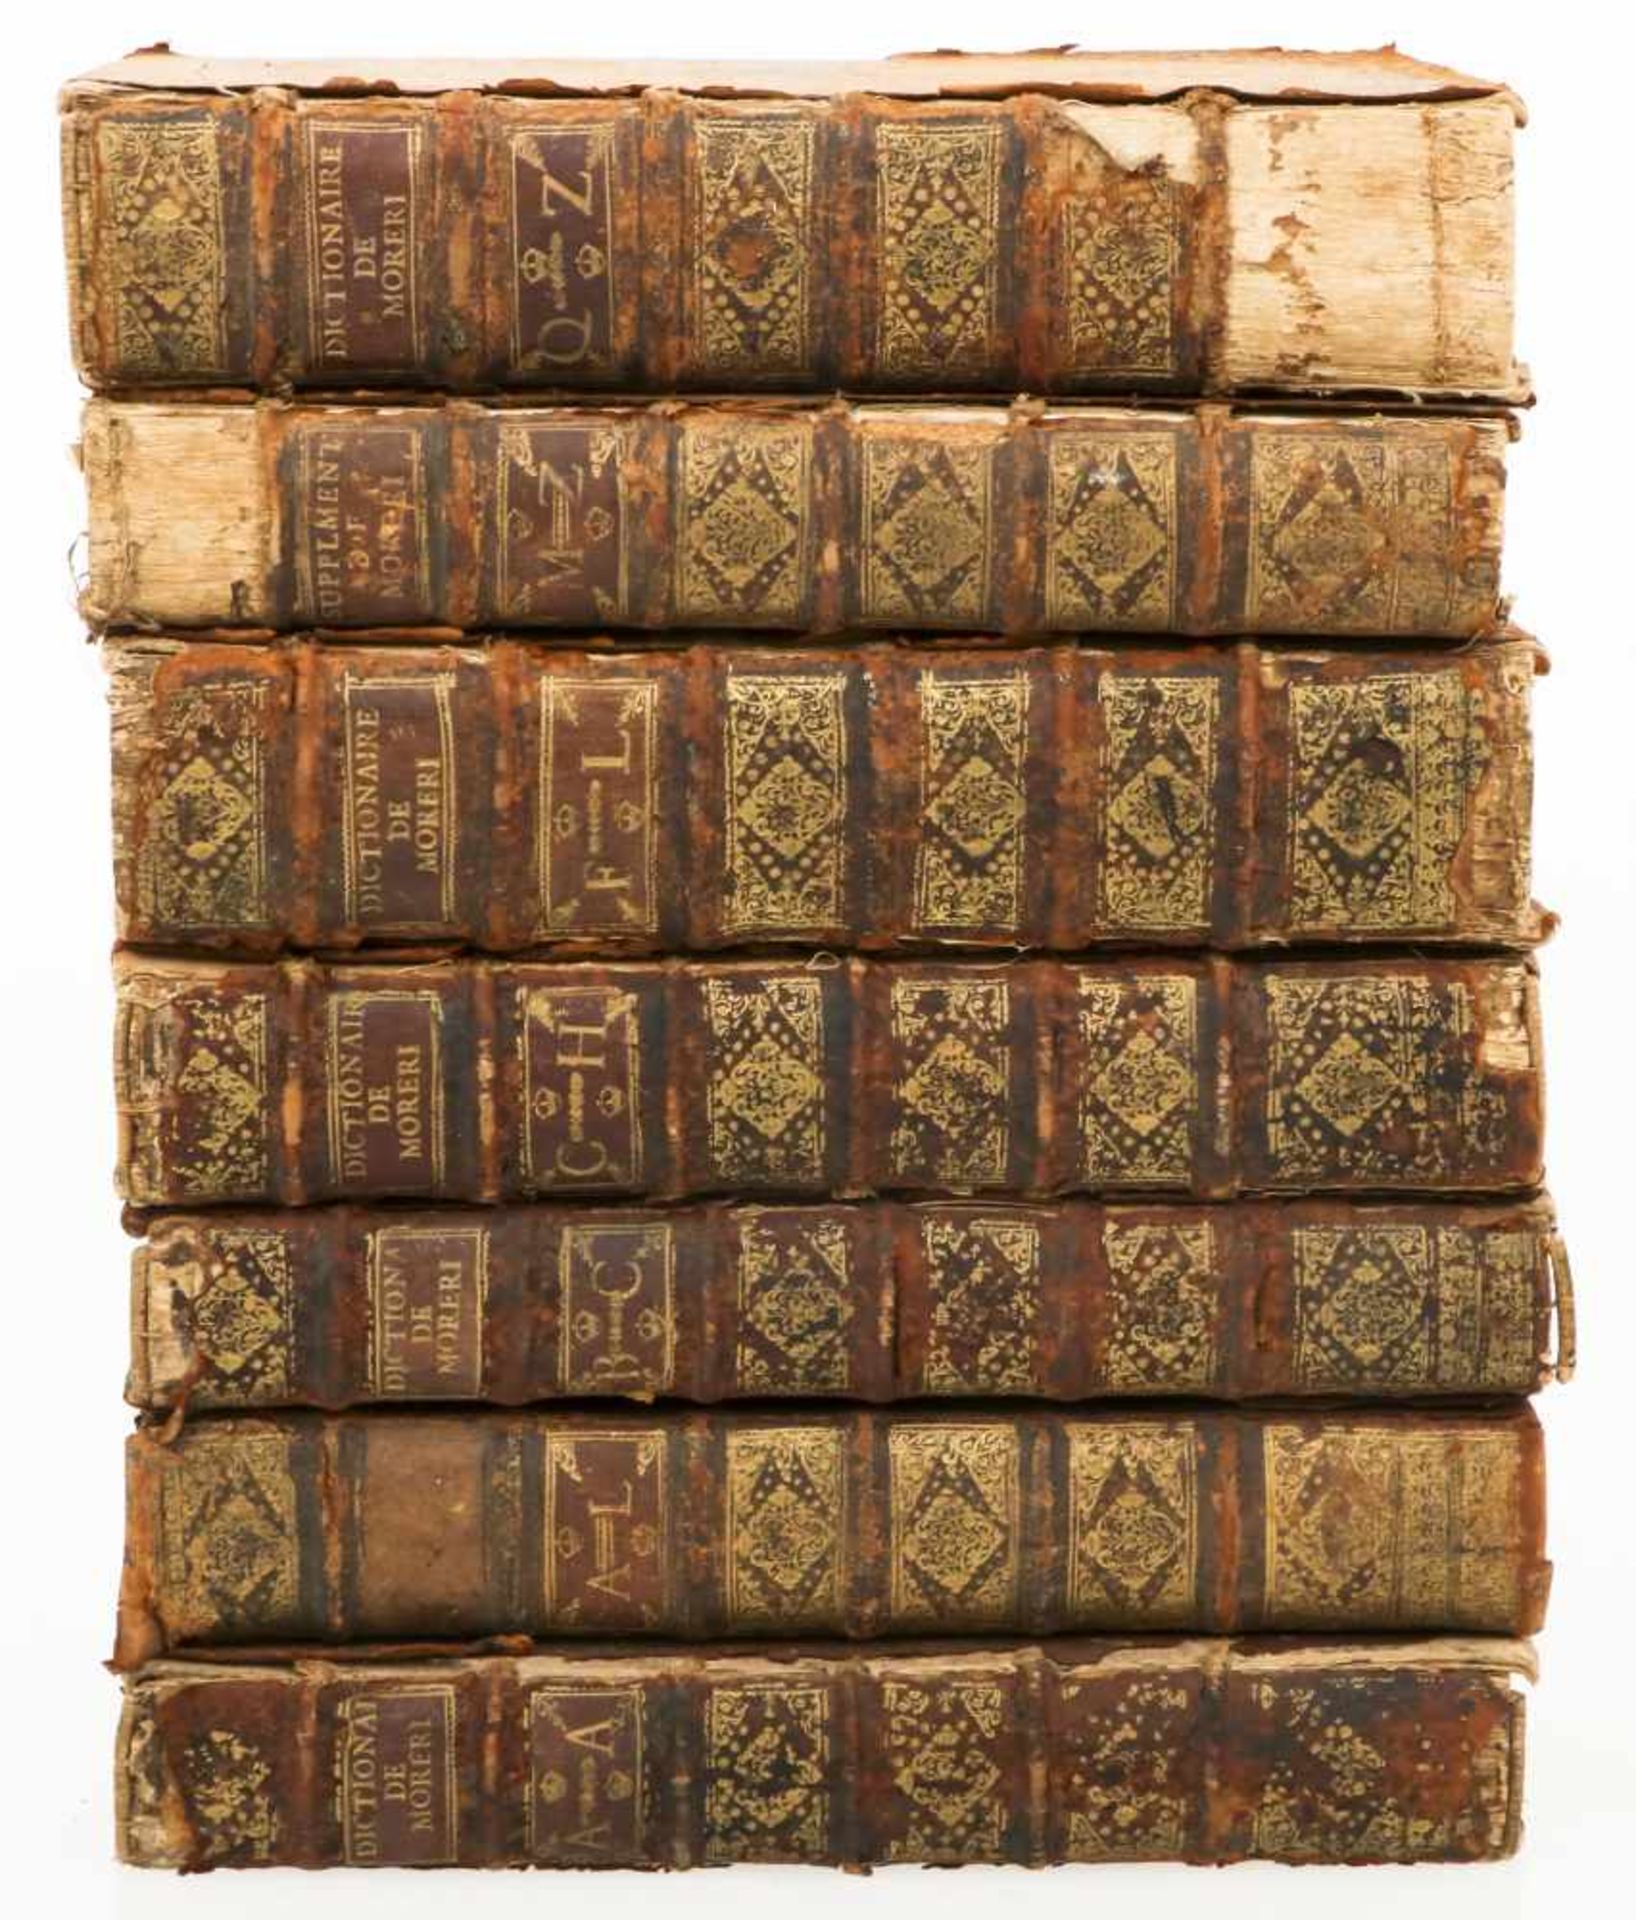 Louis Moreri (1643-1680) - Le grand dictionnaire historique ou Le mélange curieux de l'histoire